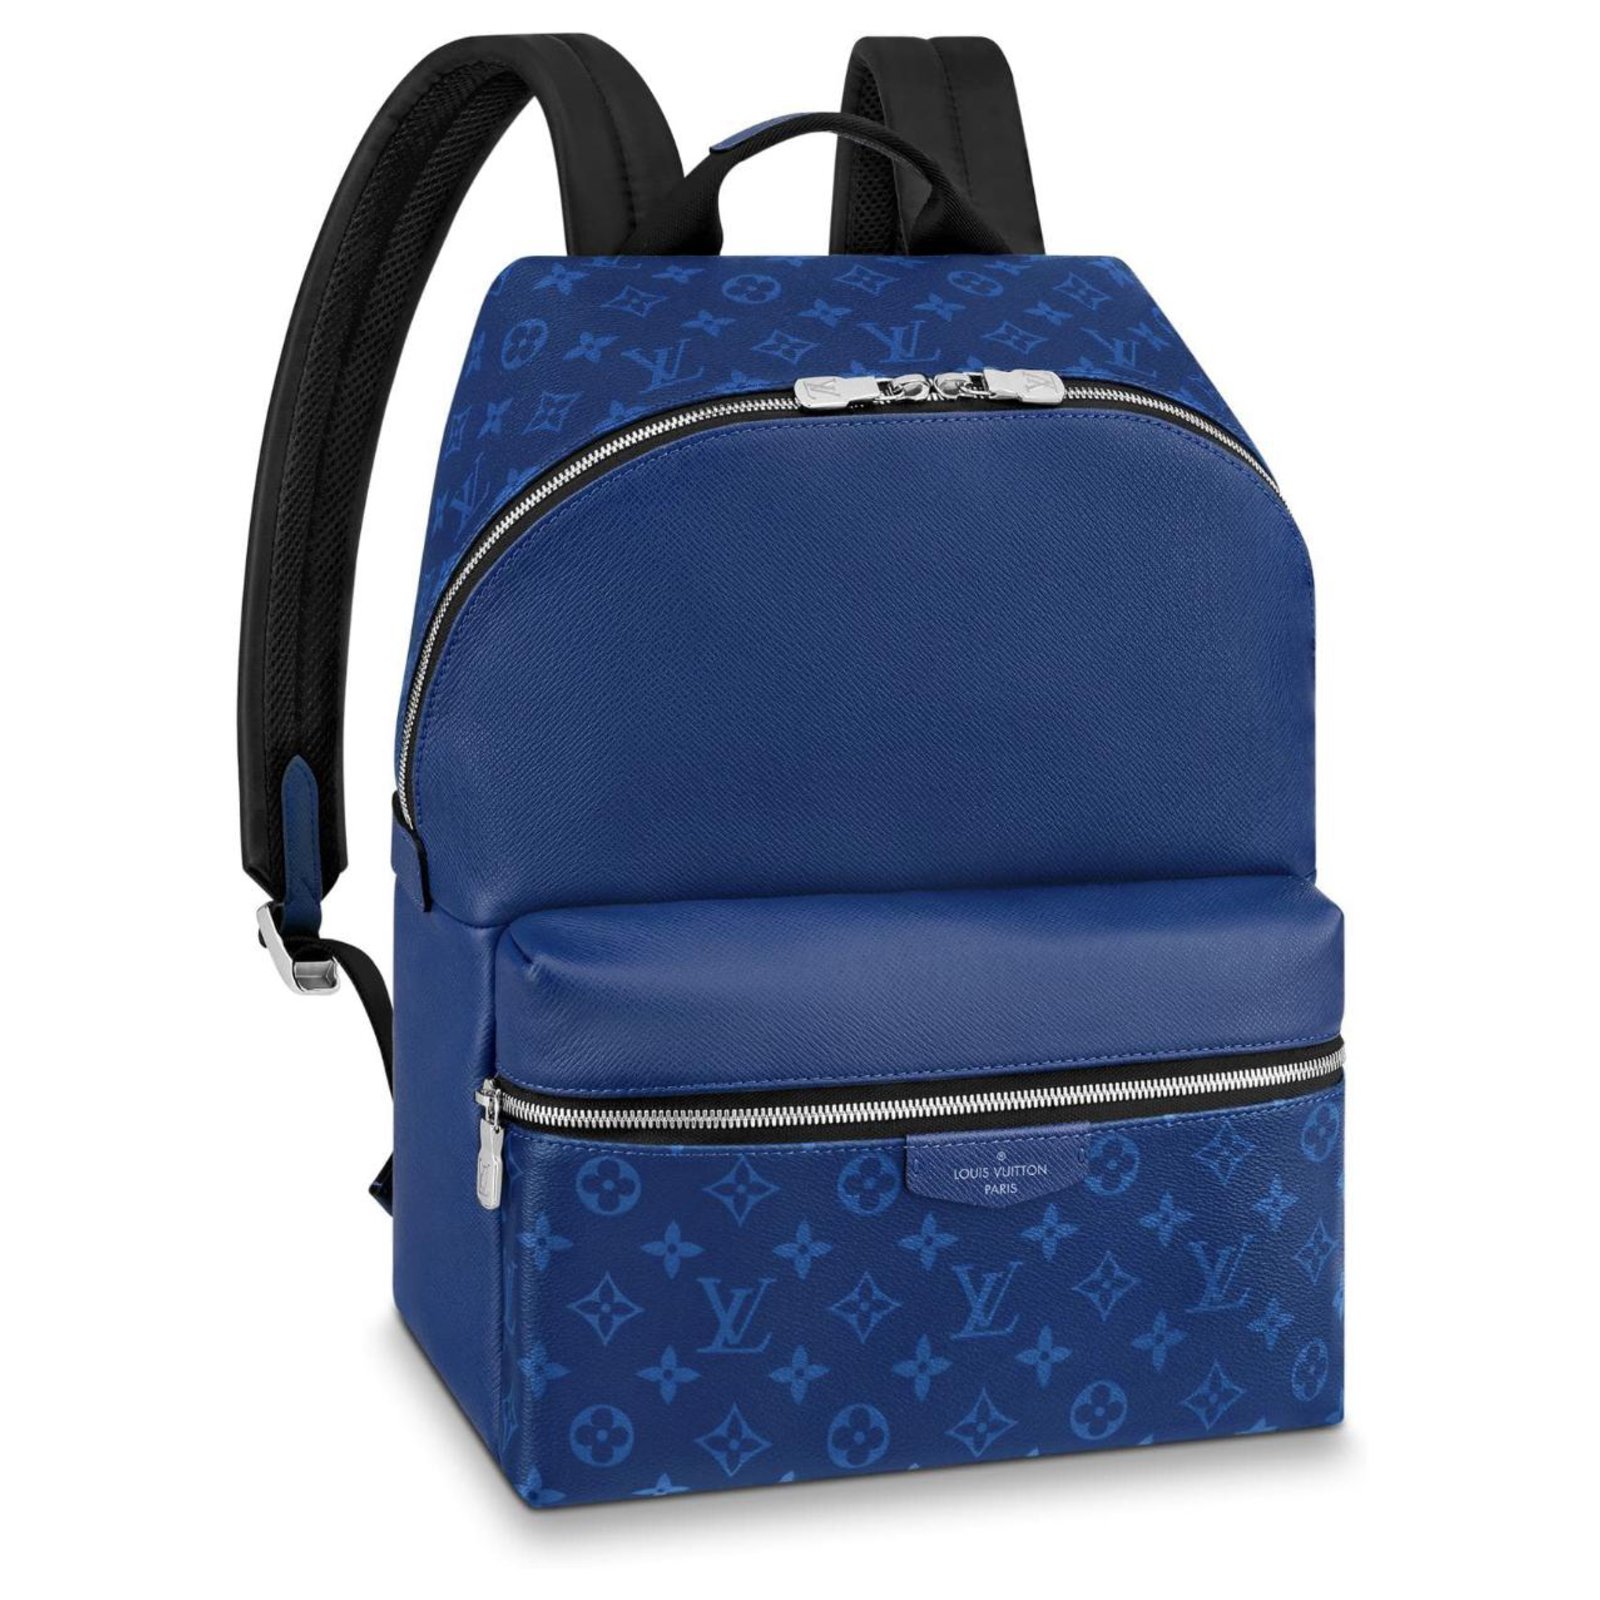 Lv ( Louis Vuitton) Unisex Backpack